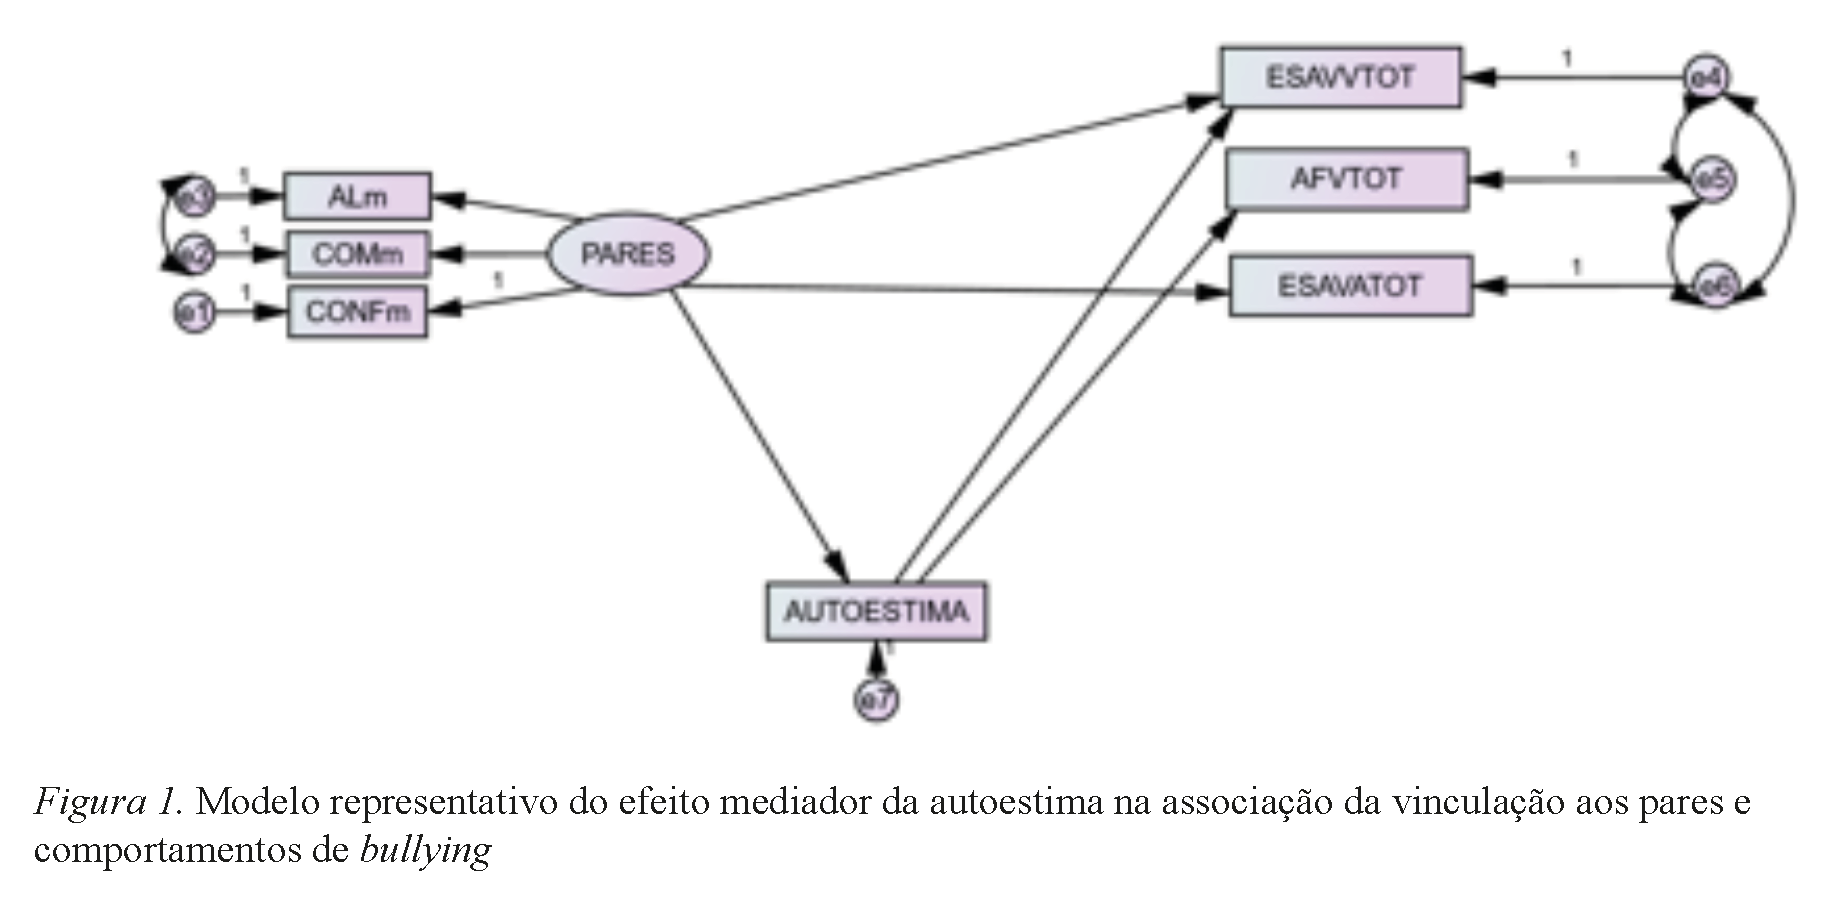 Modelo representativo do efeito mediador da autoestima na associação da vinculação aos pares e comportamentos de bullying